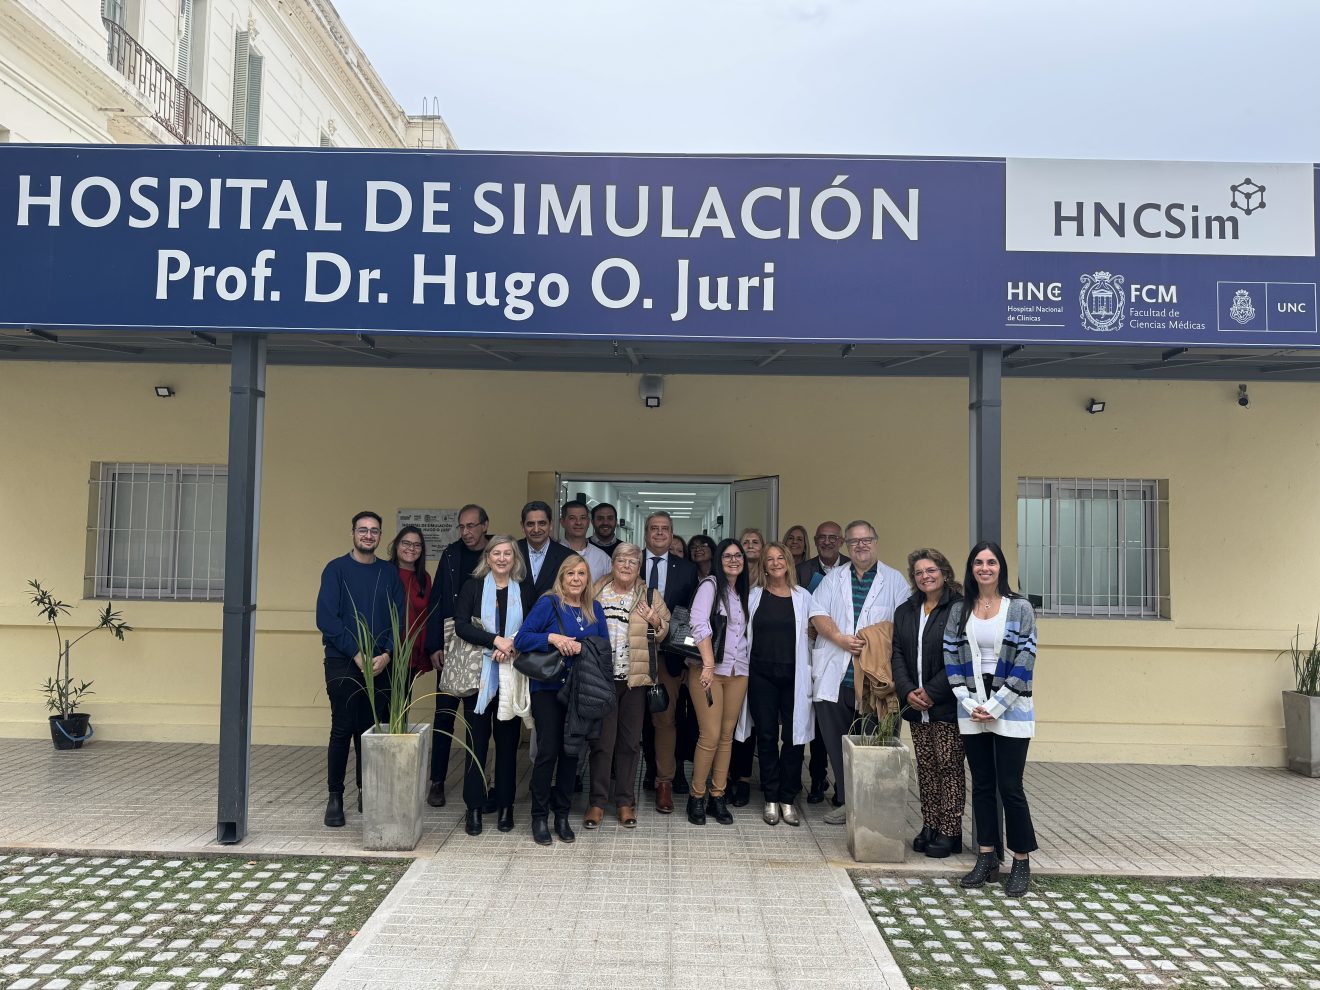 Nuevo encuentro de capacitación para docentes en nuestro Hospital de Simulación Hugo Juri